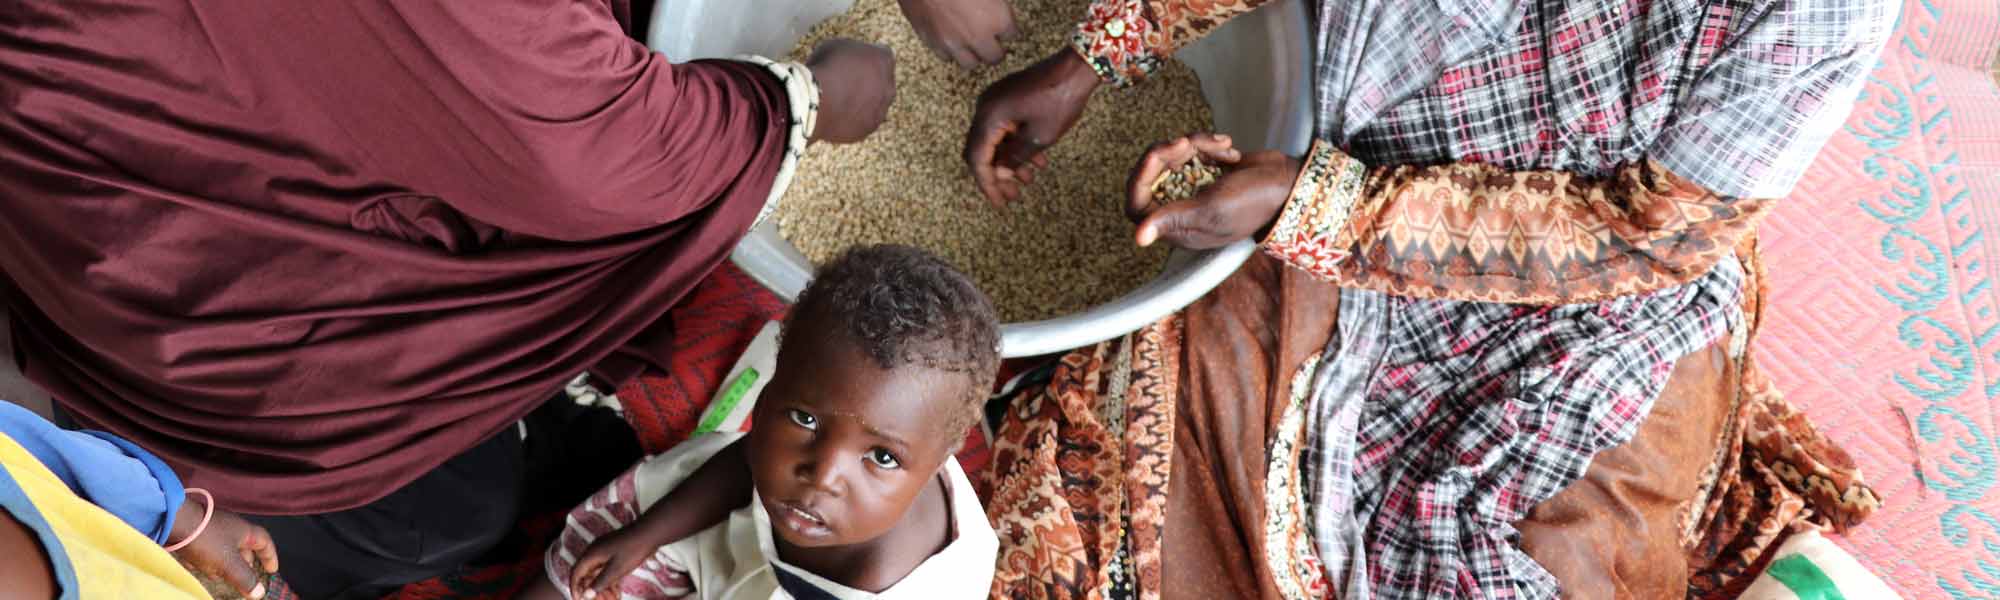 Kvinner i Niger som tilbereder mat og et lite barn, som ser opp mot kamera.